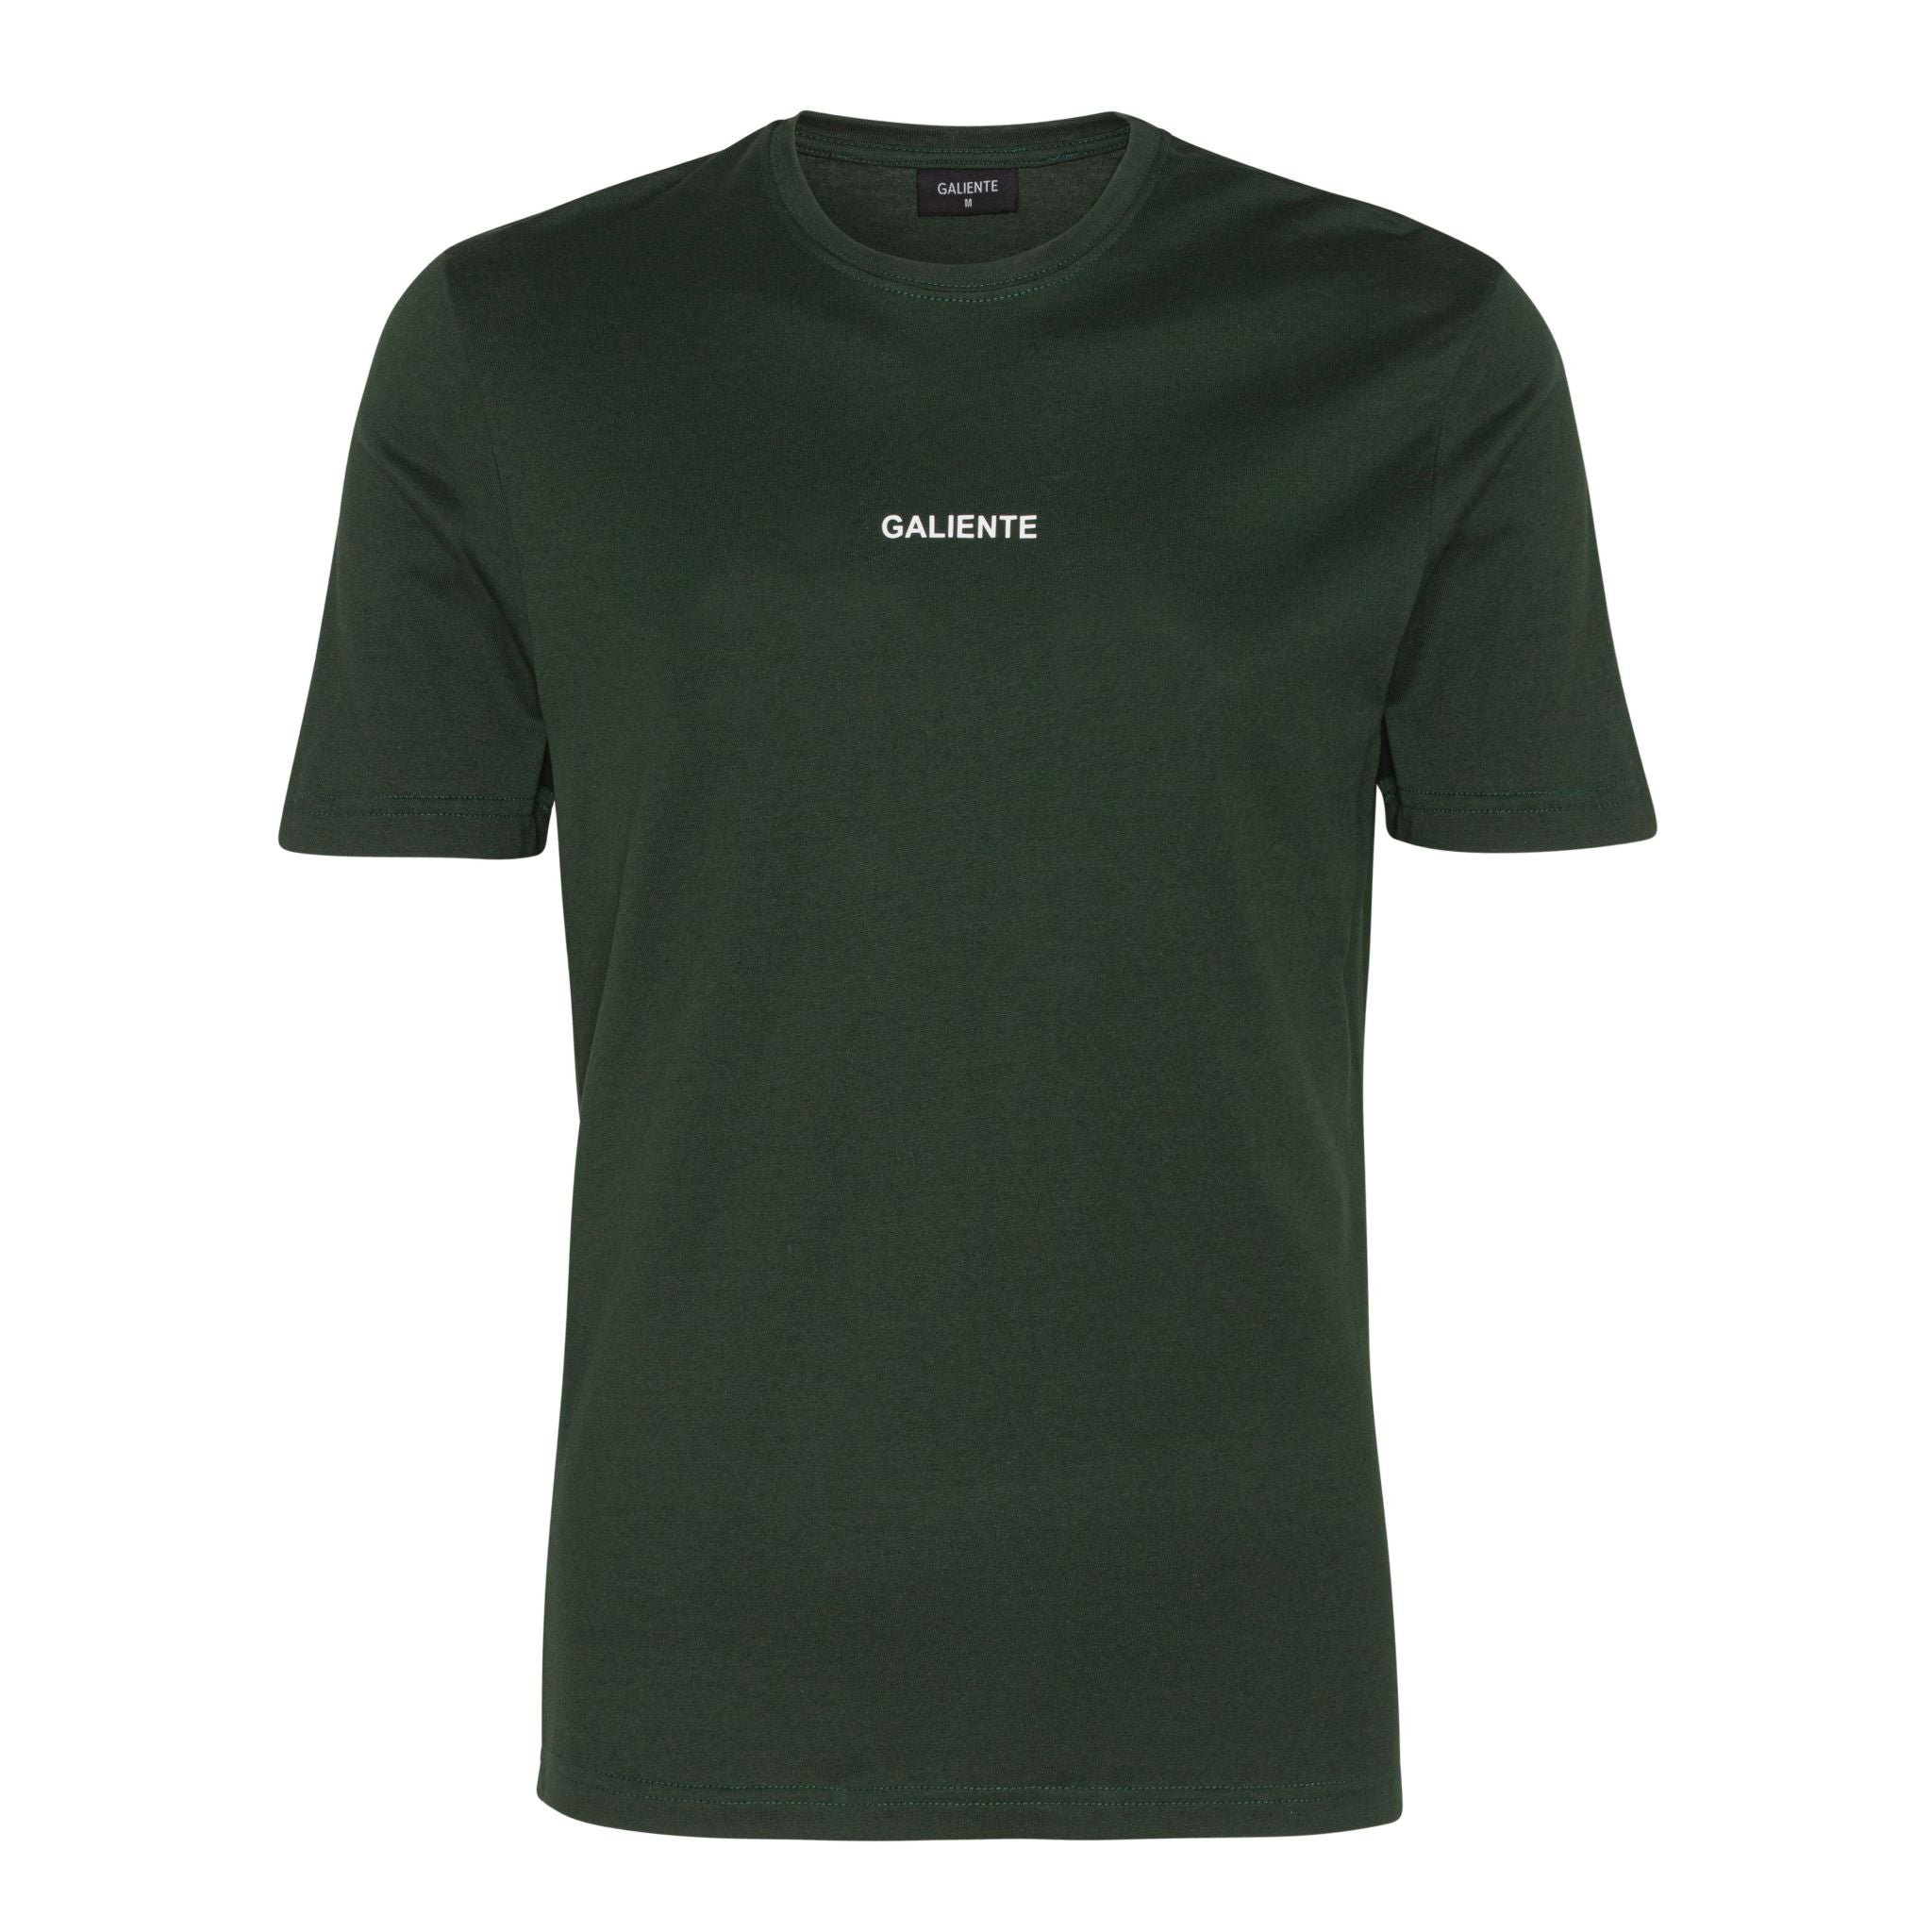 Grøn T-shirt